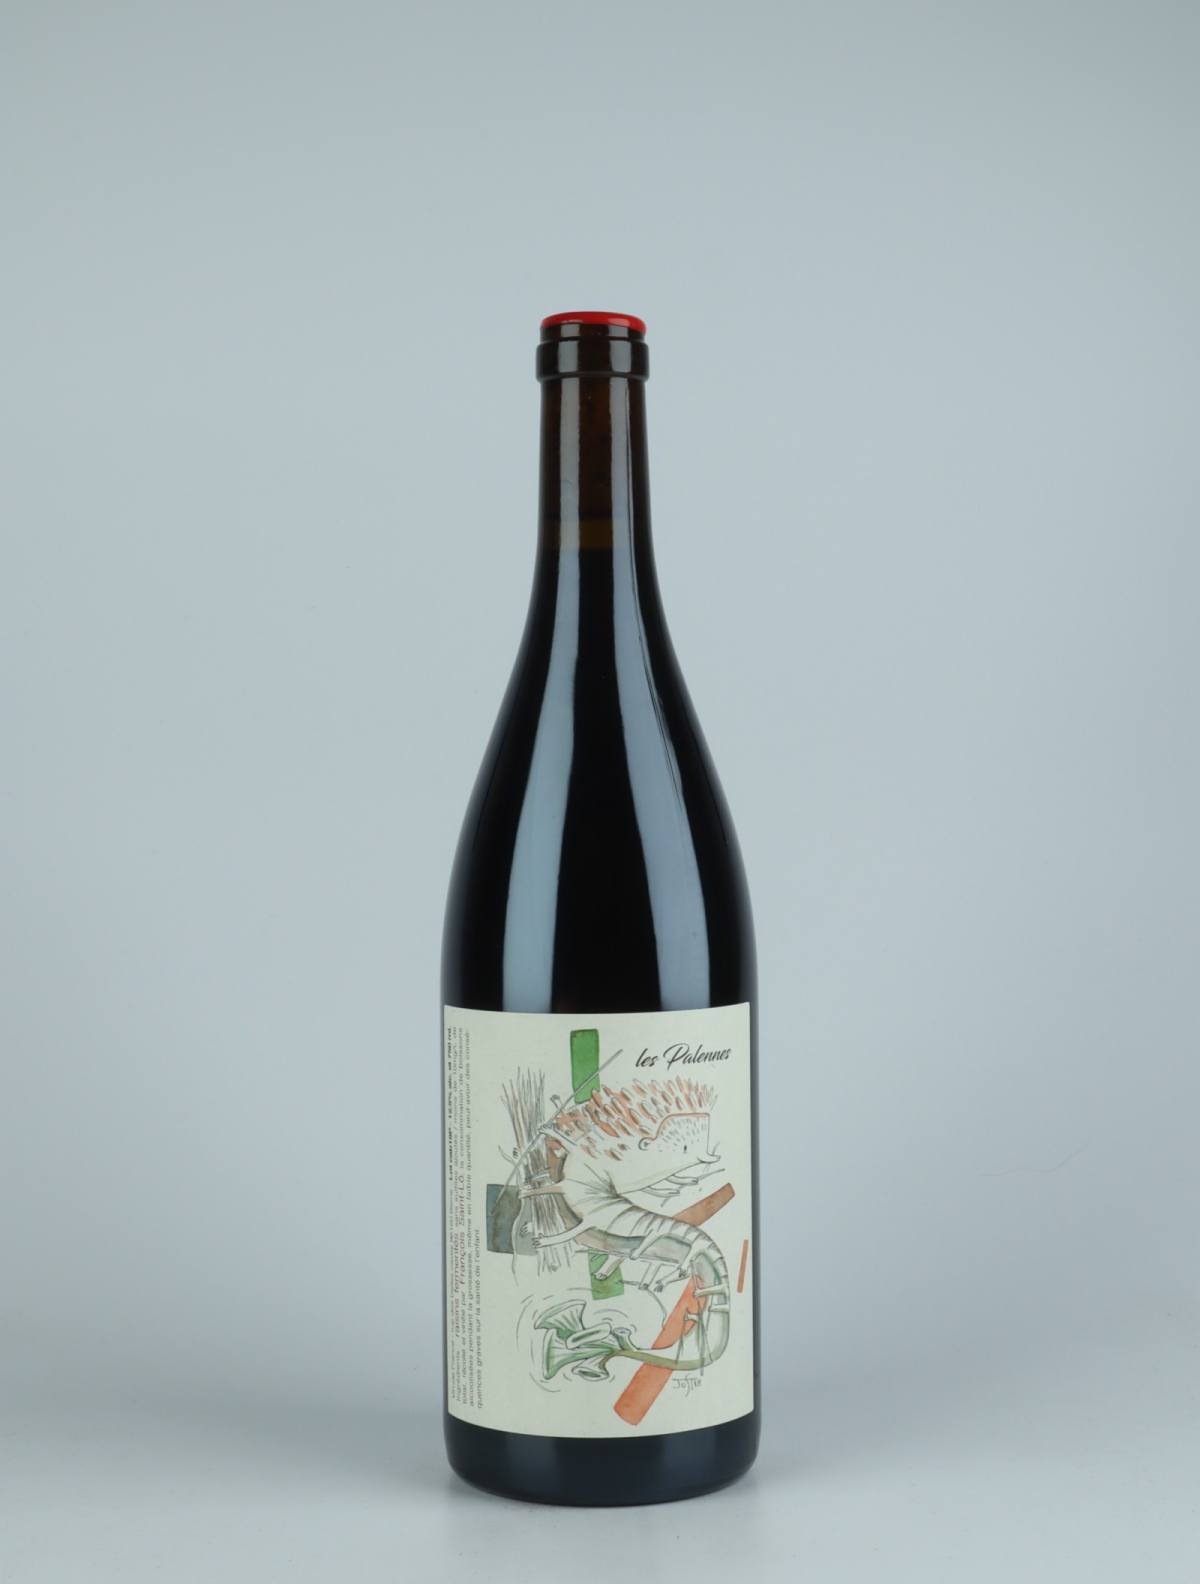 A bottle 2019 Les Palennes Red wine from François Saint-Lô, Loire in France